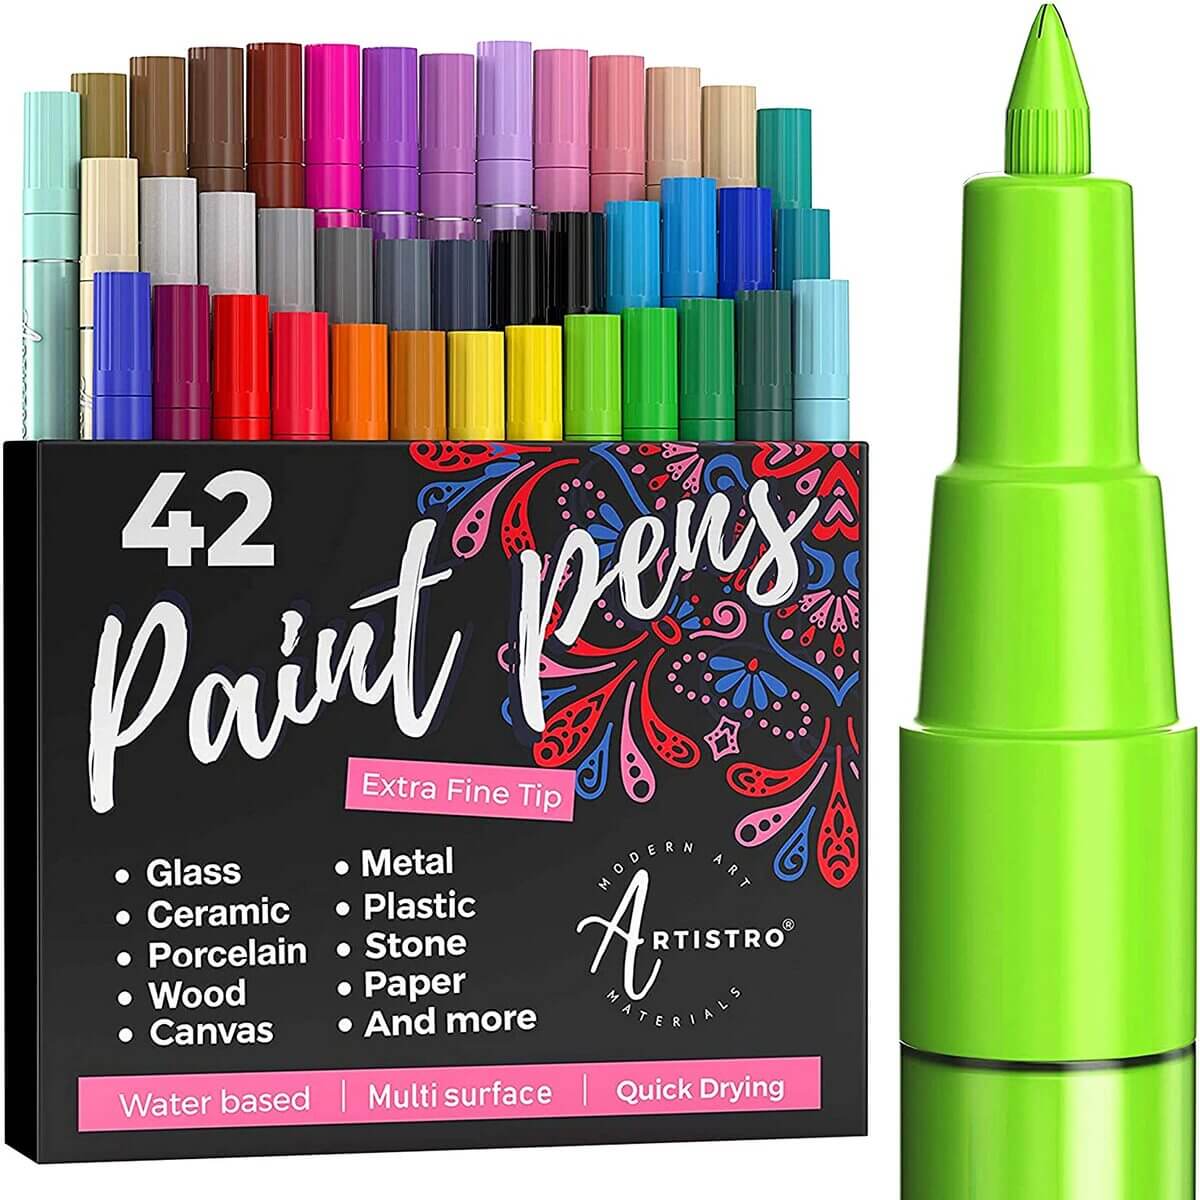 Paint Pens